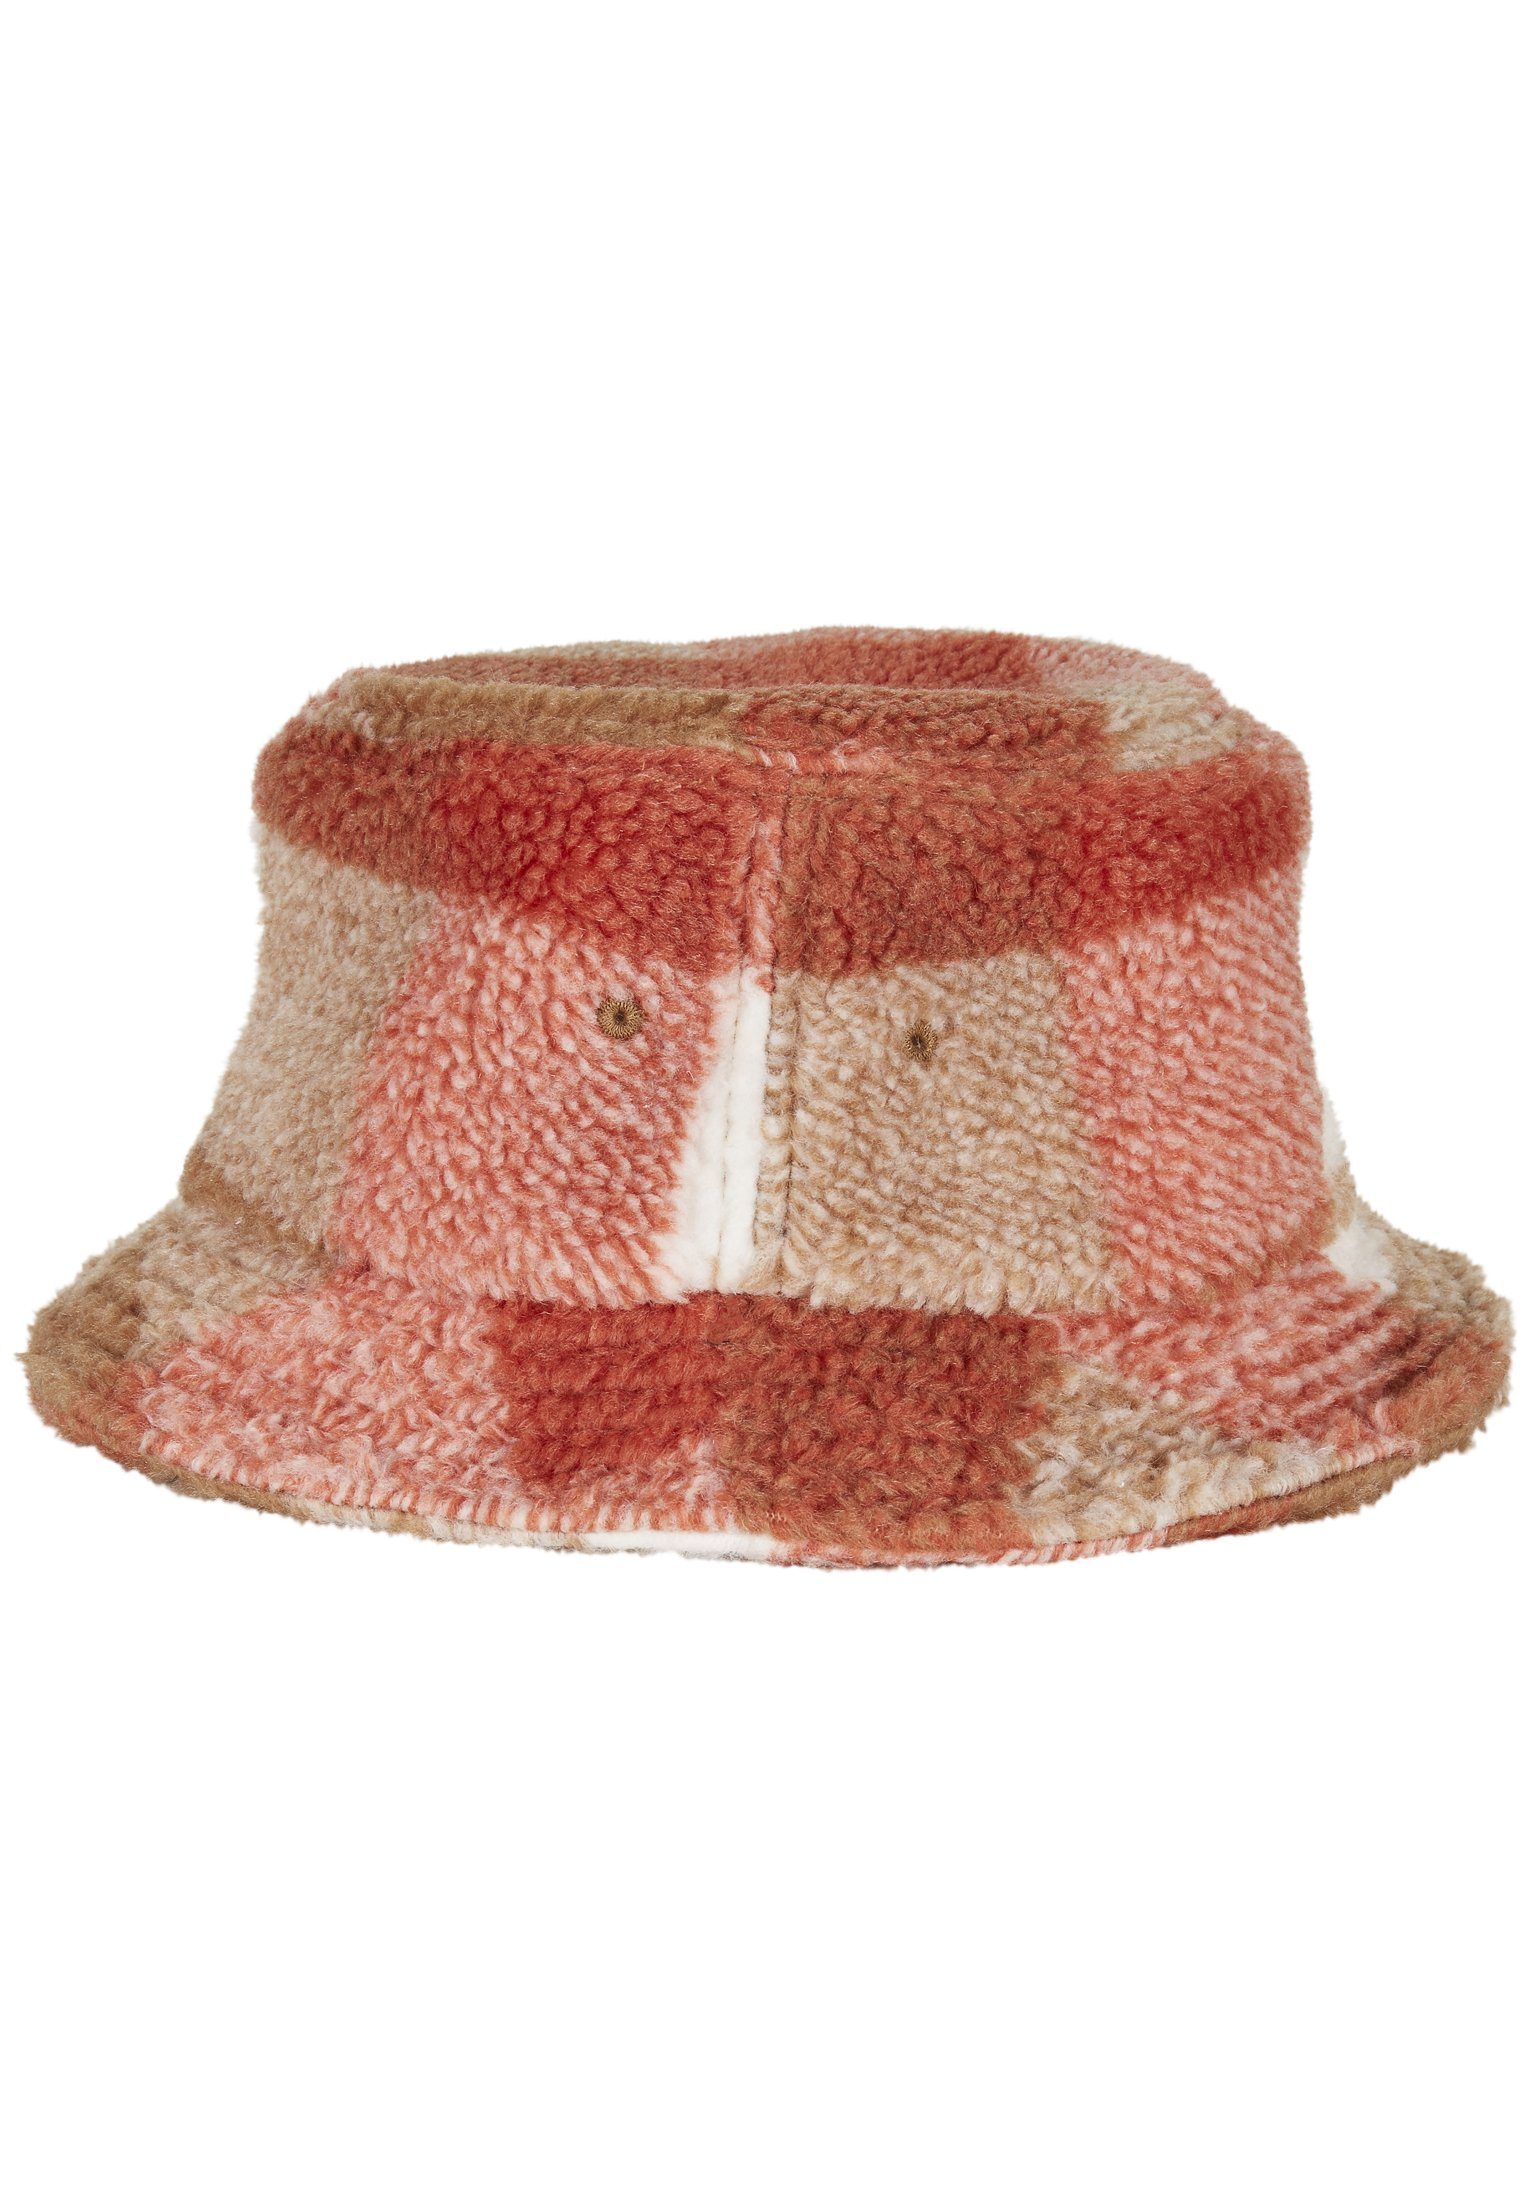 Bucket Flex Sherpa Cap Hat Hat whitesand/toffee Check Bucket Flexfit